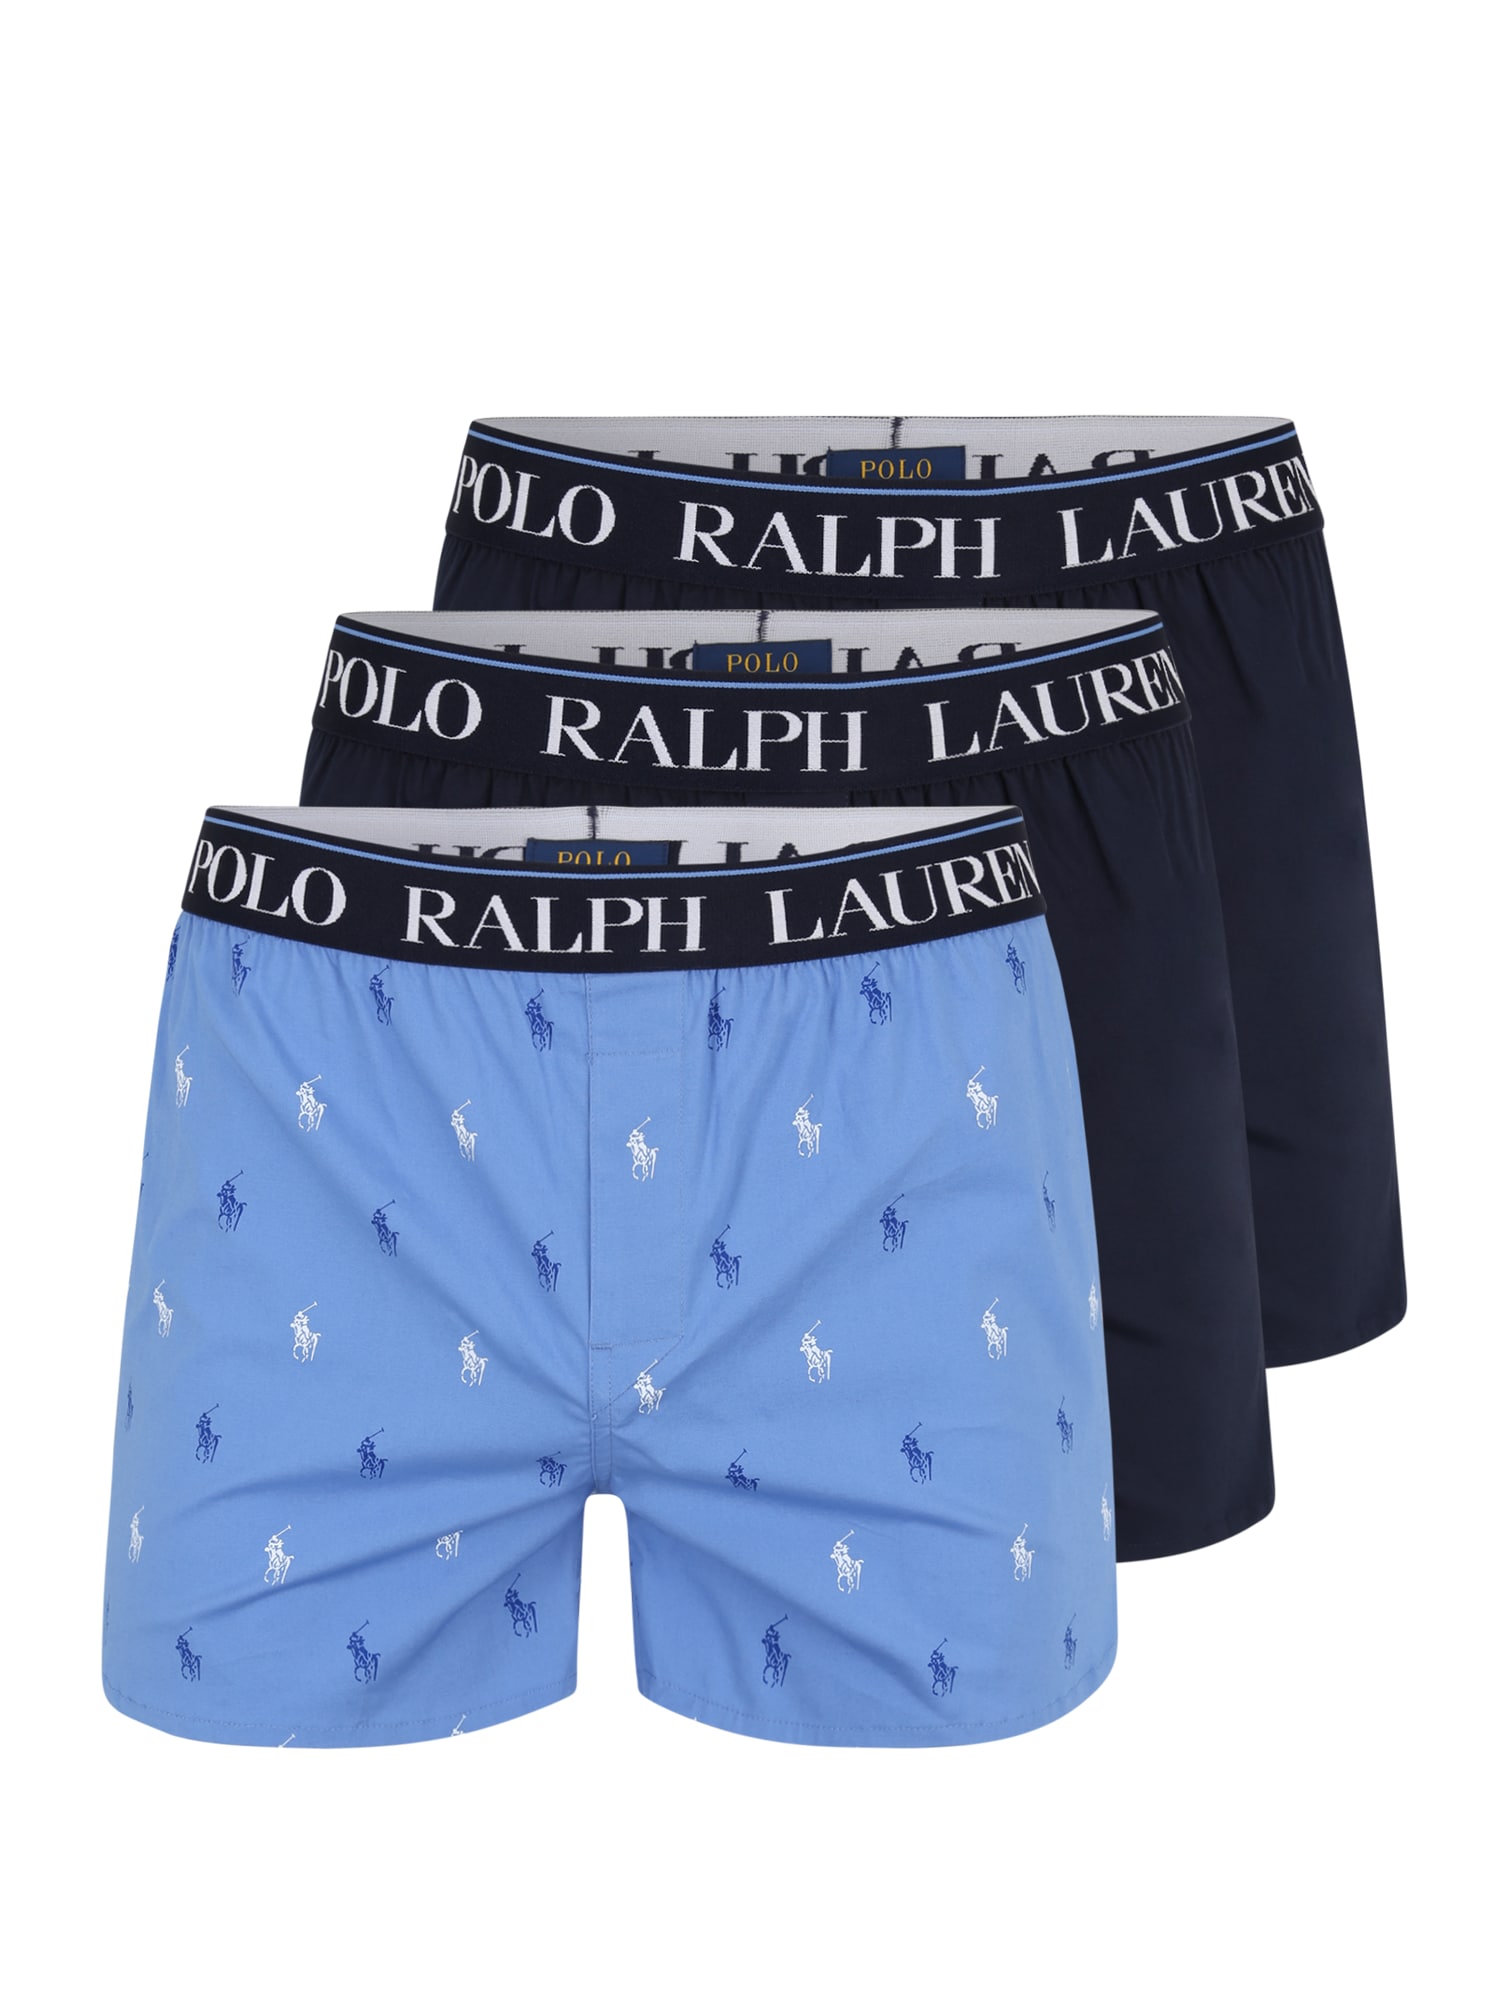 Polo Ralph Lauren Boxeri  albastru / bleumarin / albastru deschis / alb